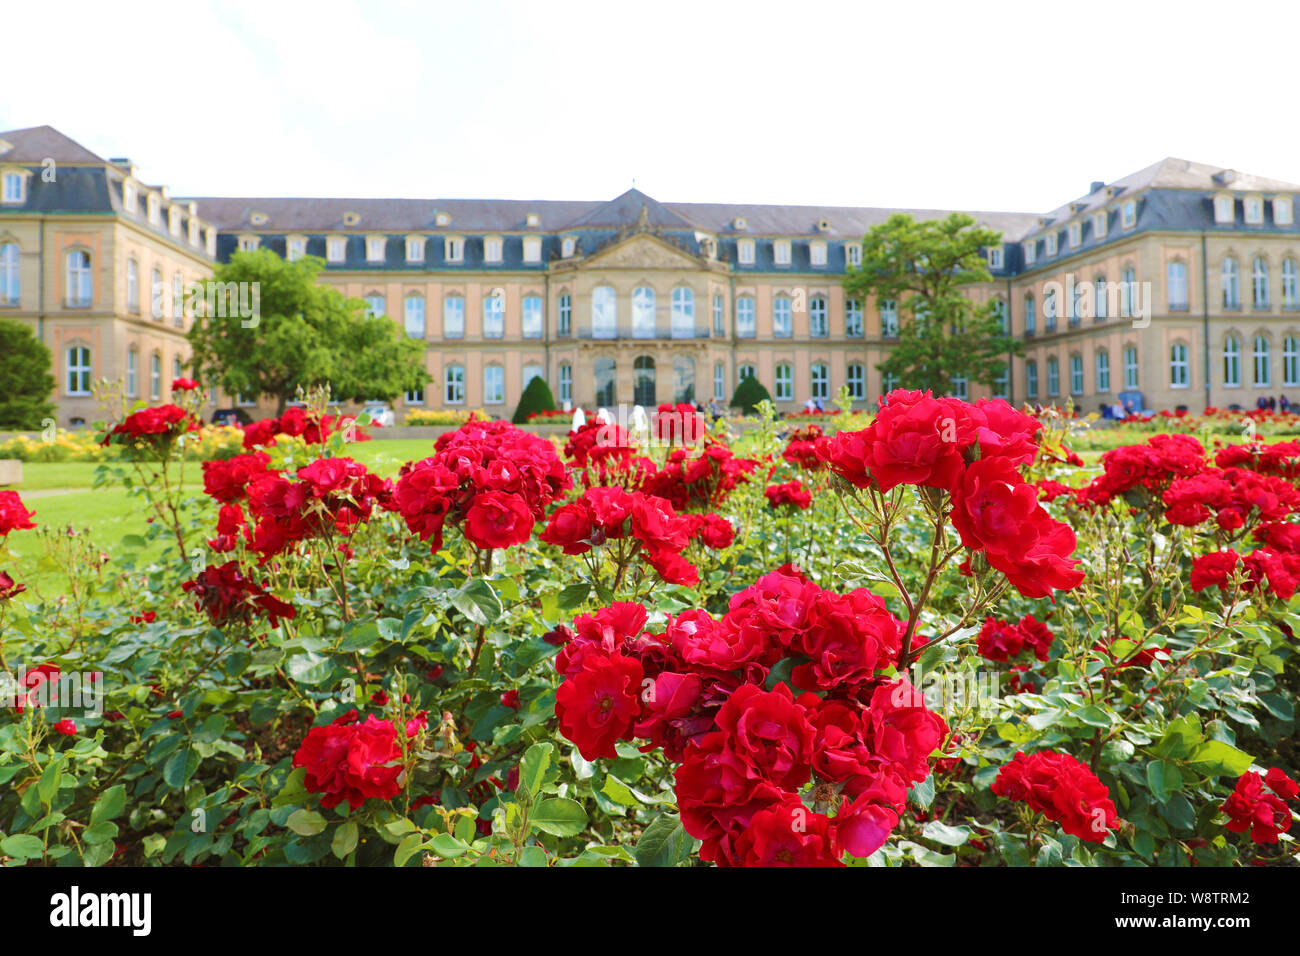 Neues Schloss (New Palace) and Oberer Schloßgarten garden of Stuttgart, Germany. Focus on the red roses garden. Stock Photo